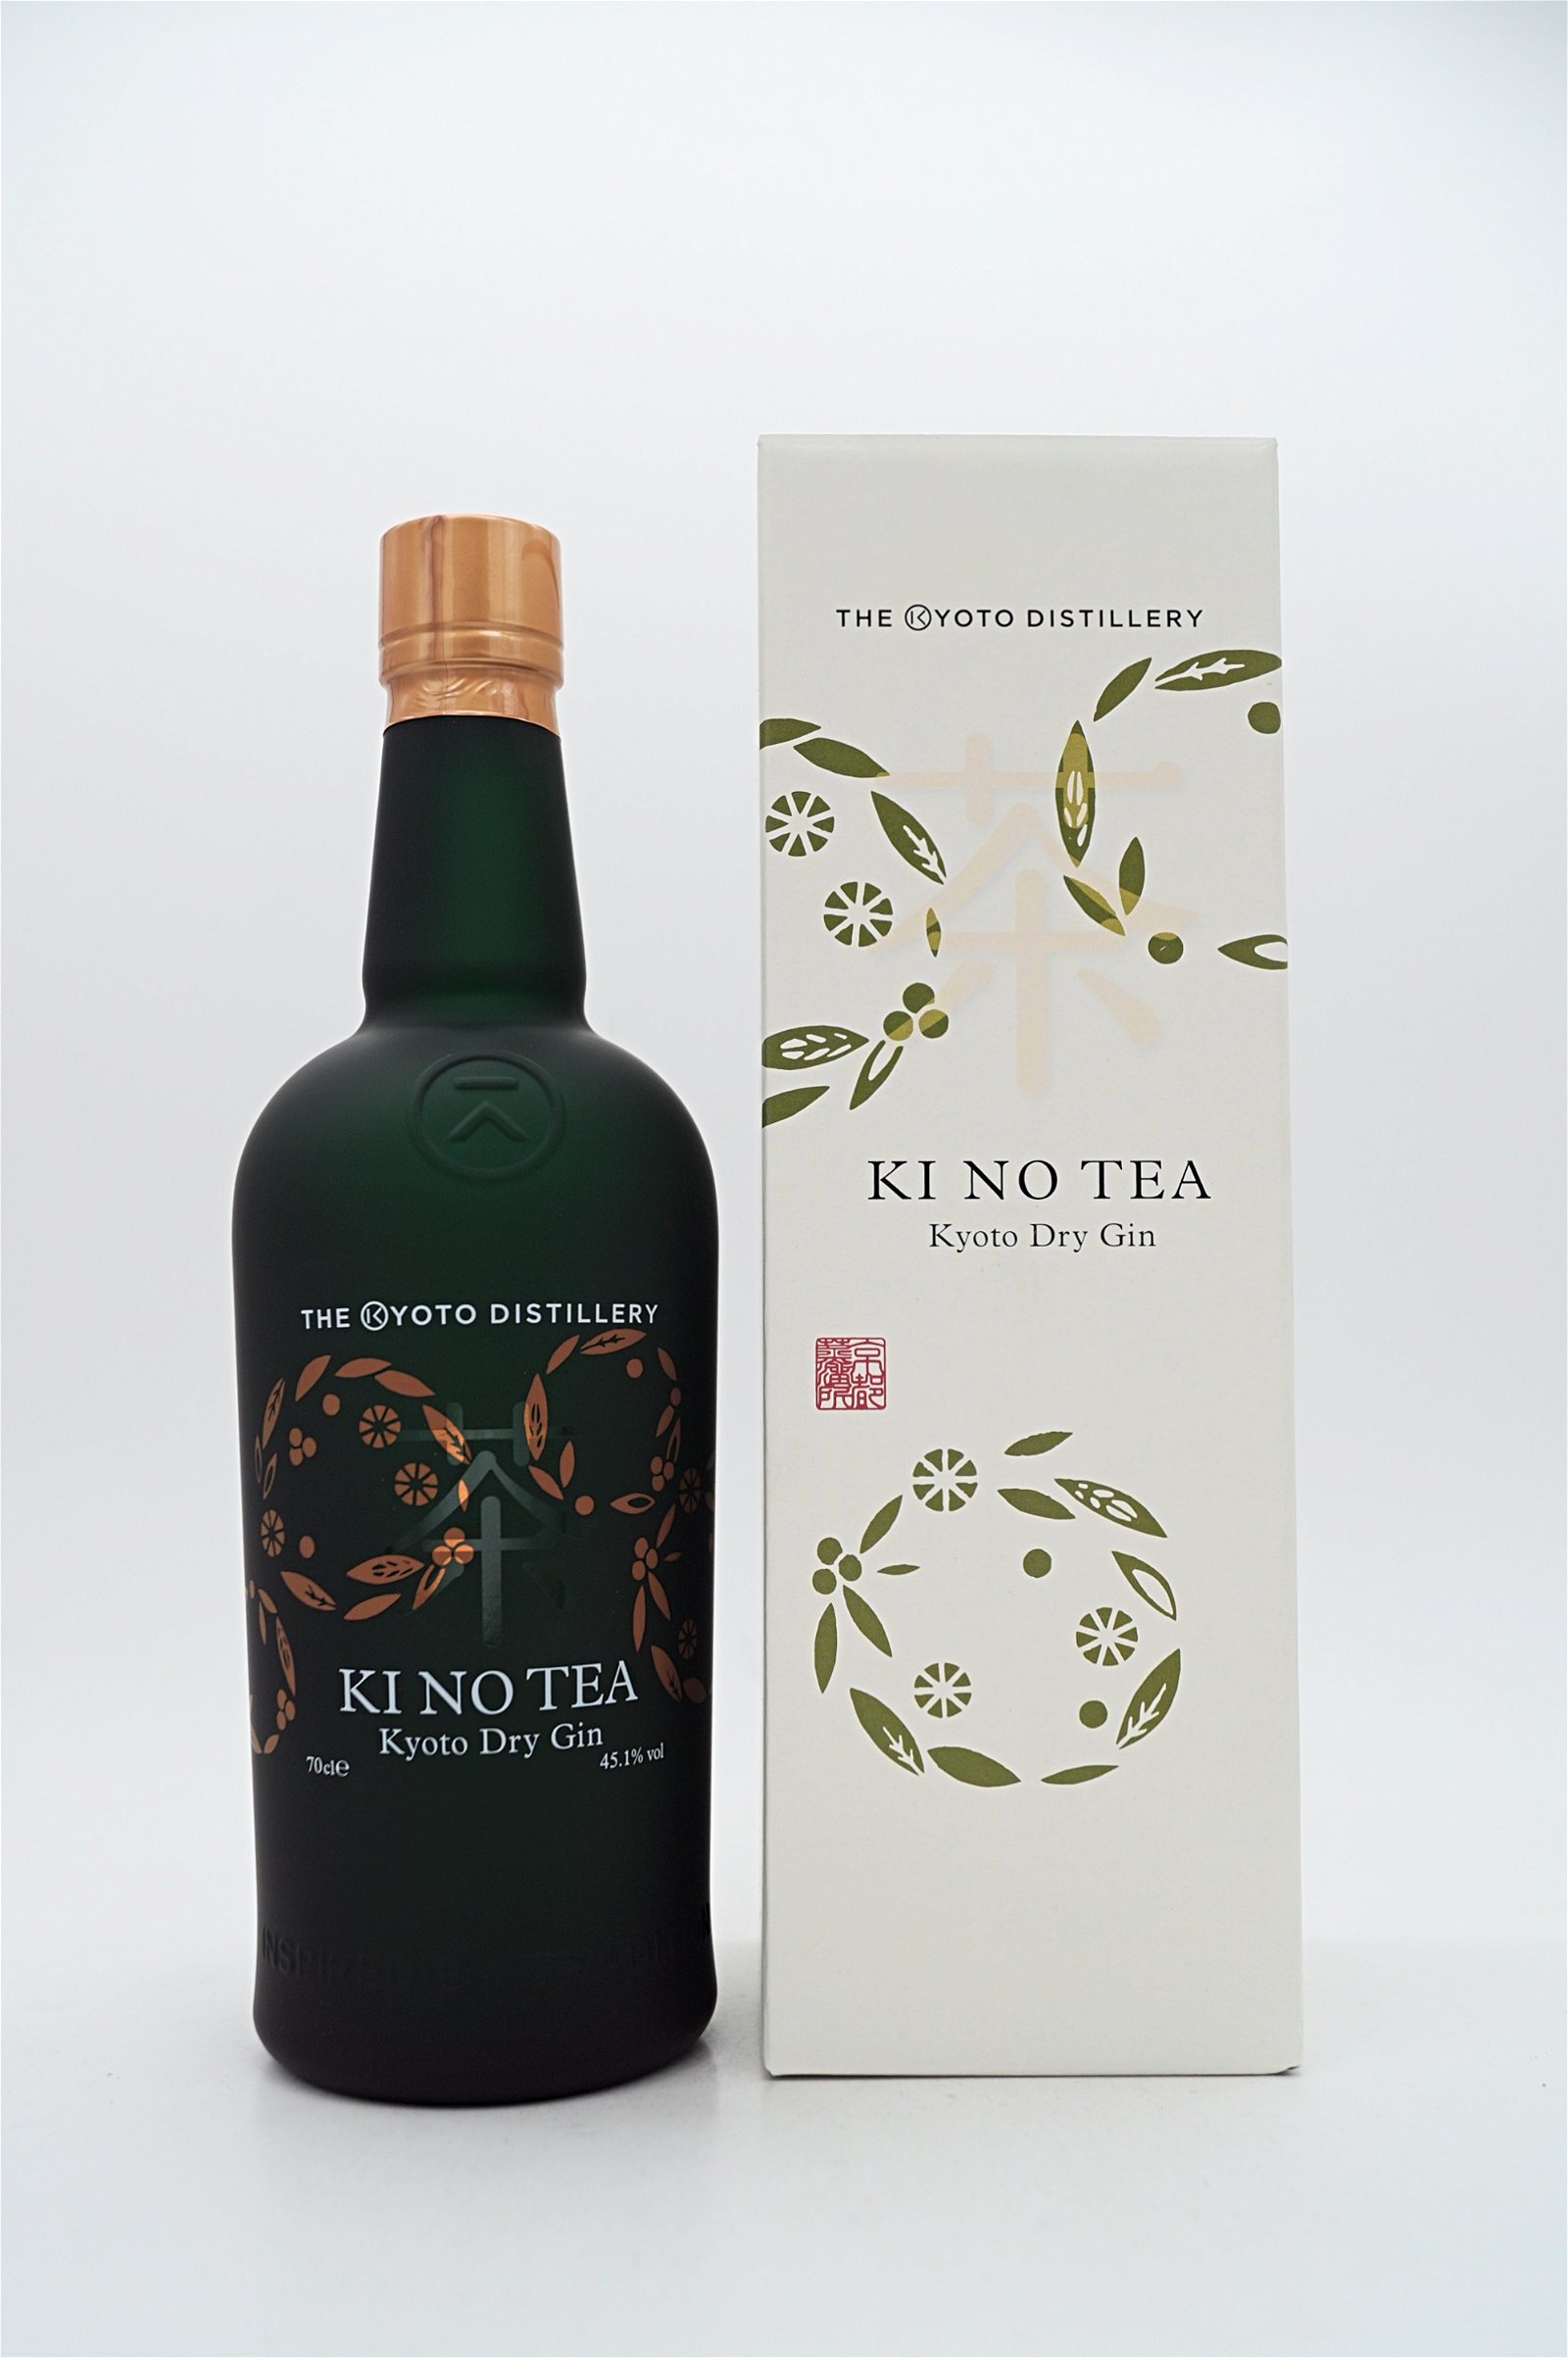 The Kyoto Distillery KI NO Tea Kyoto Dry Gin